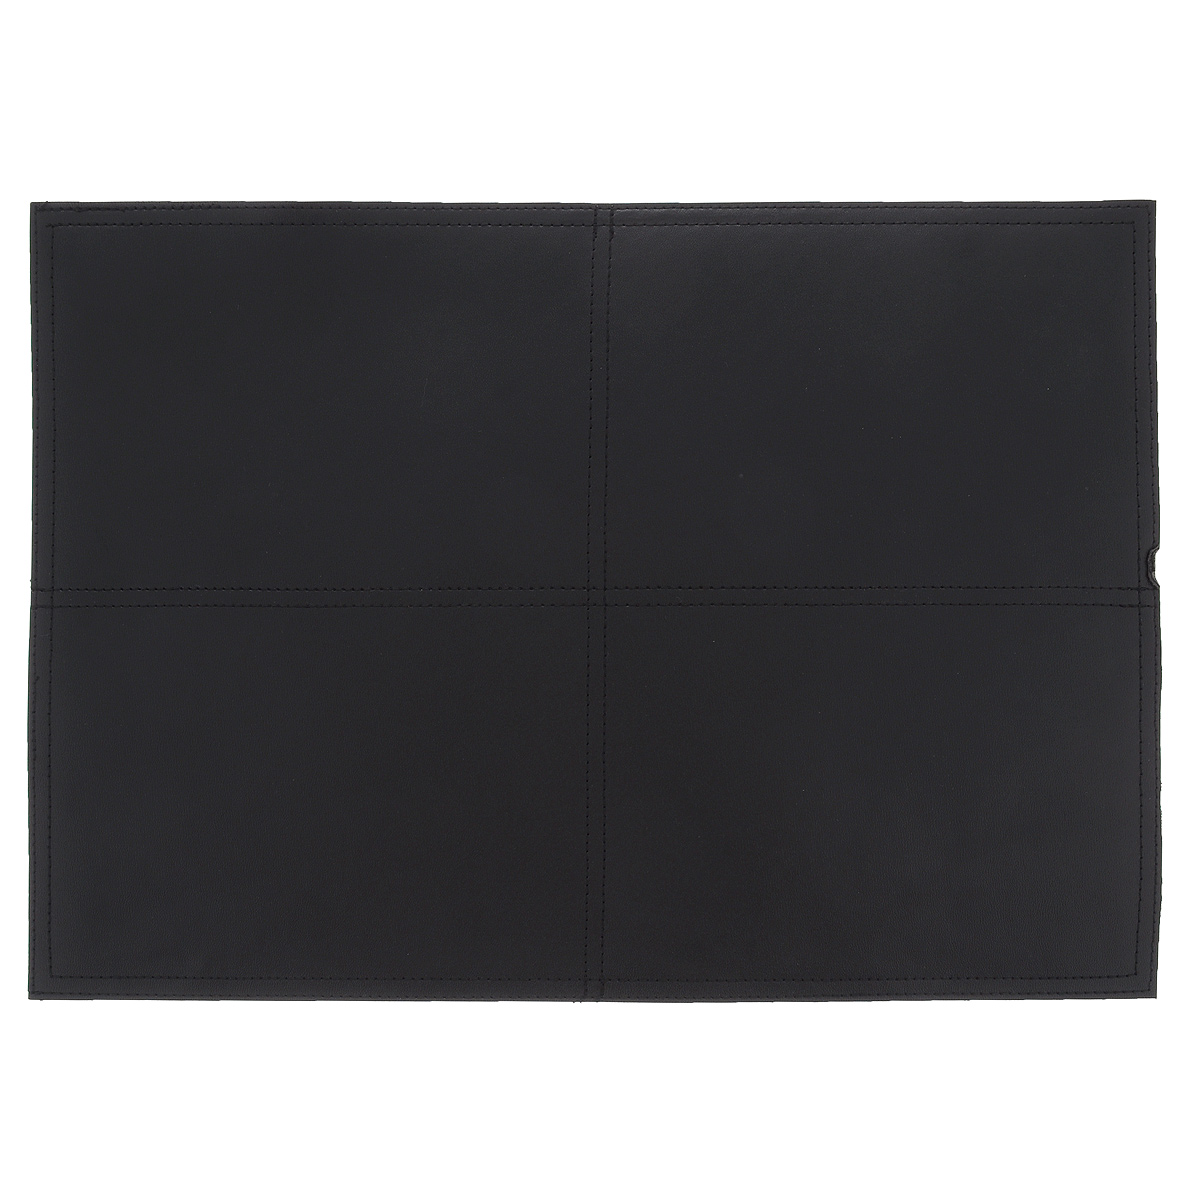 фото Подставка под горячее "Hans & Gretchen", цвет: черный, 43,5 х 28,5 см. 28HZ-9026